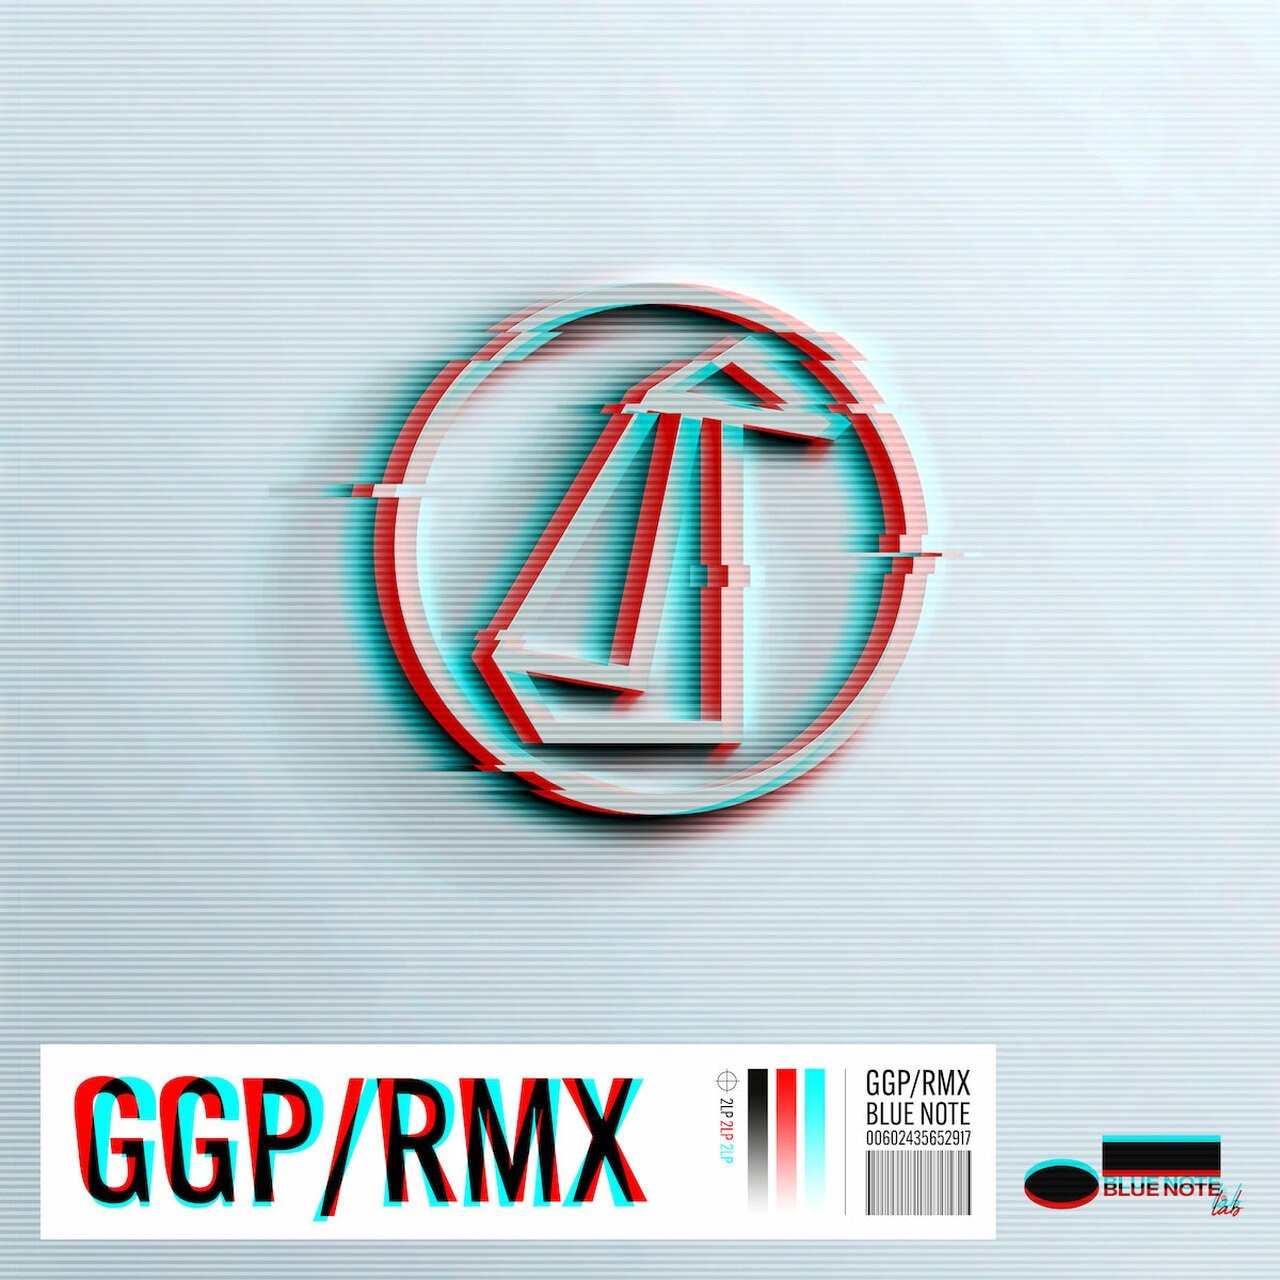 GoGo Penguin-GGPRMX-24-48-WEB-FLAC-2021-OBZEN